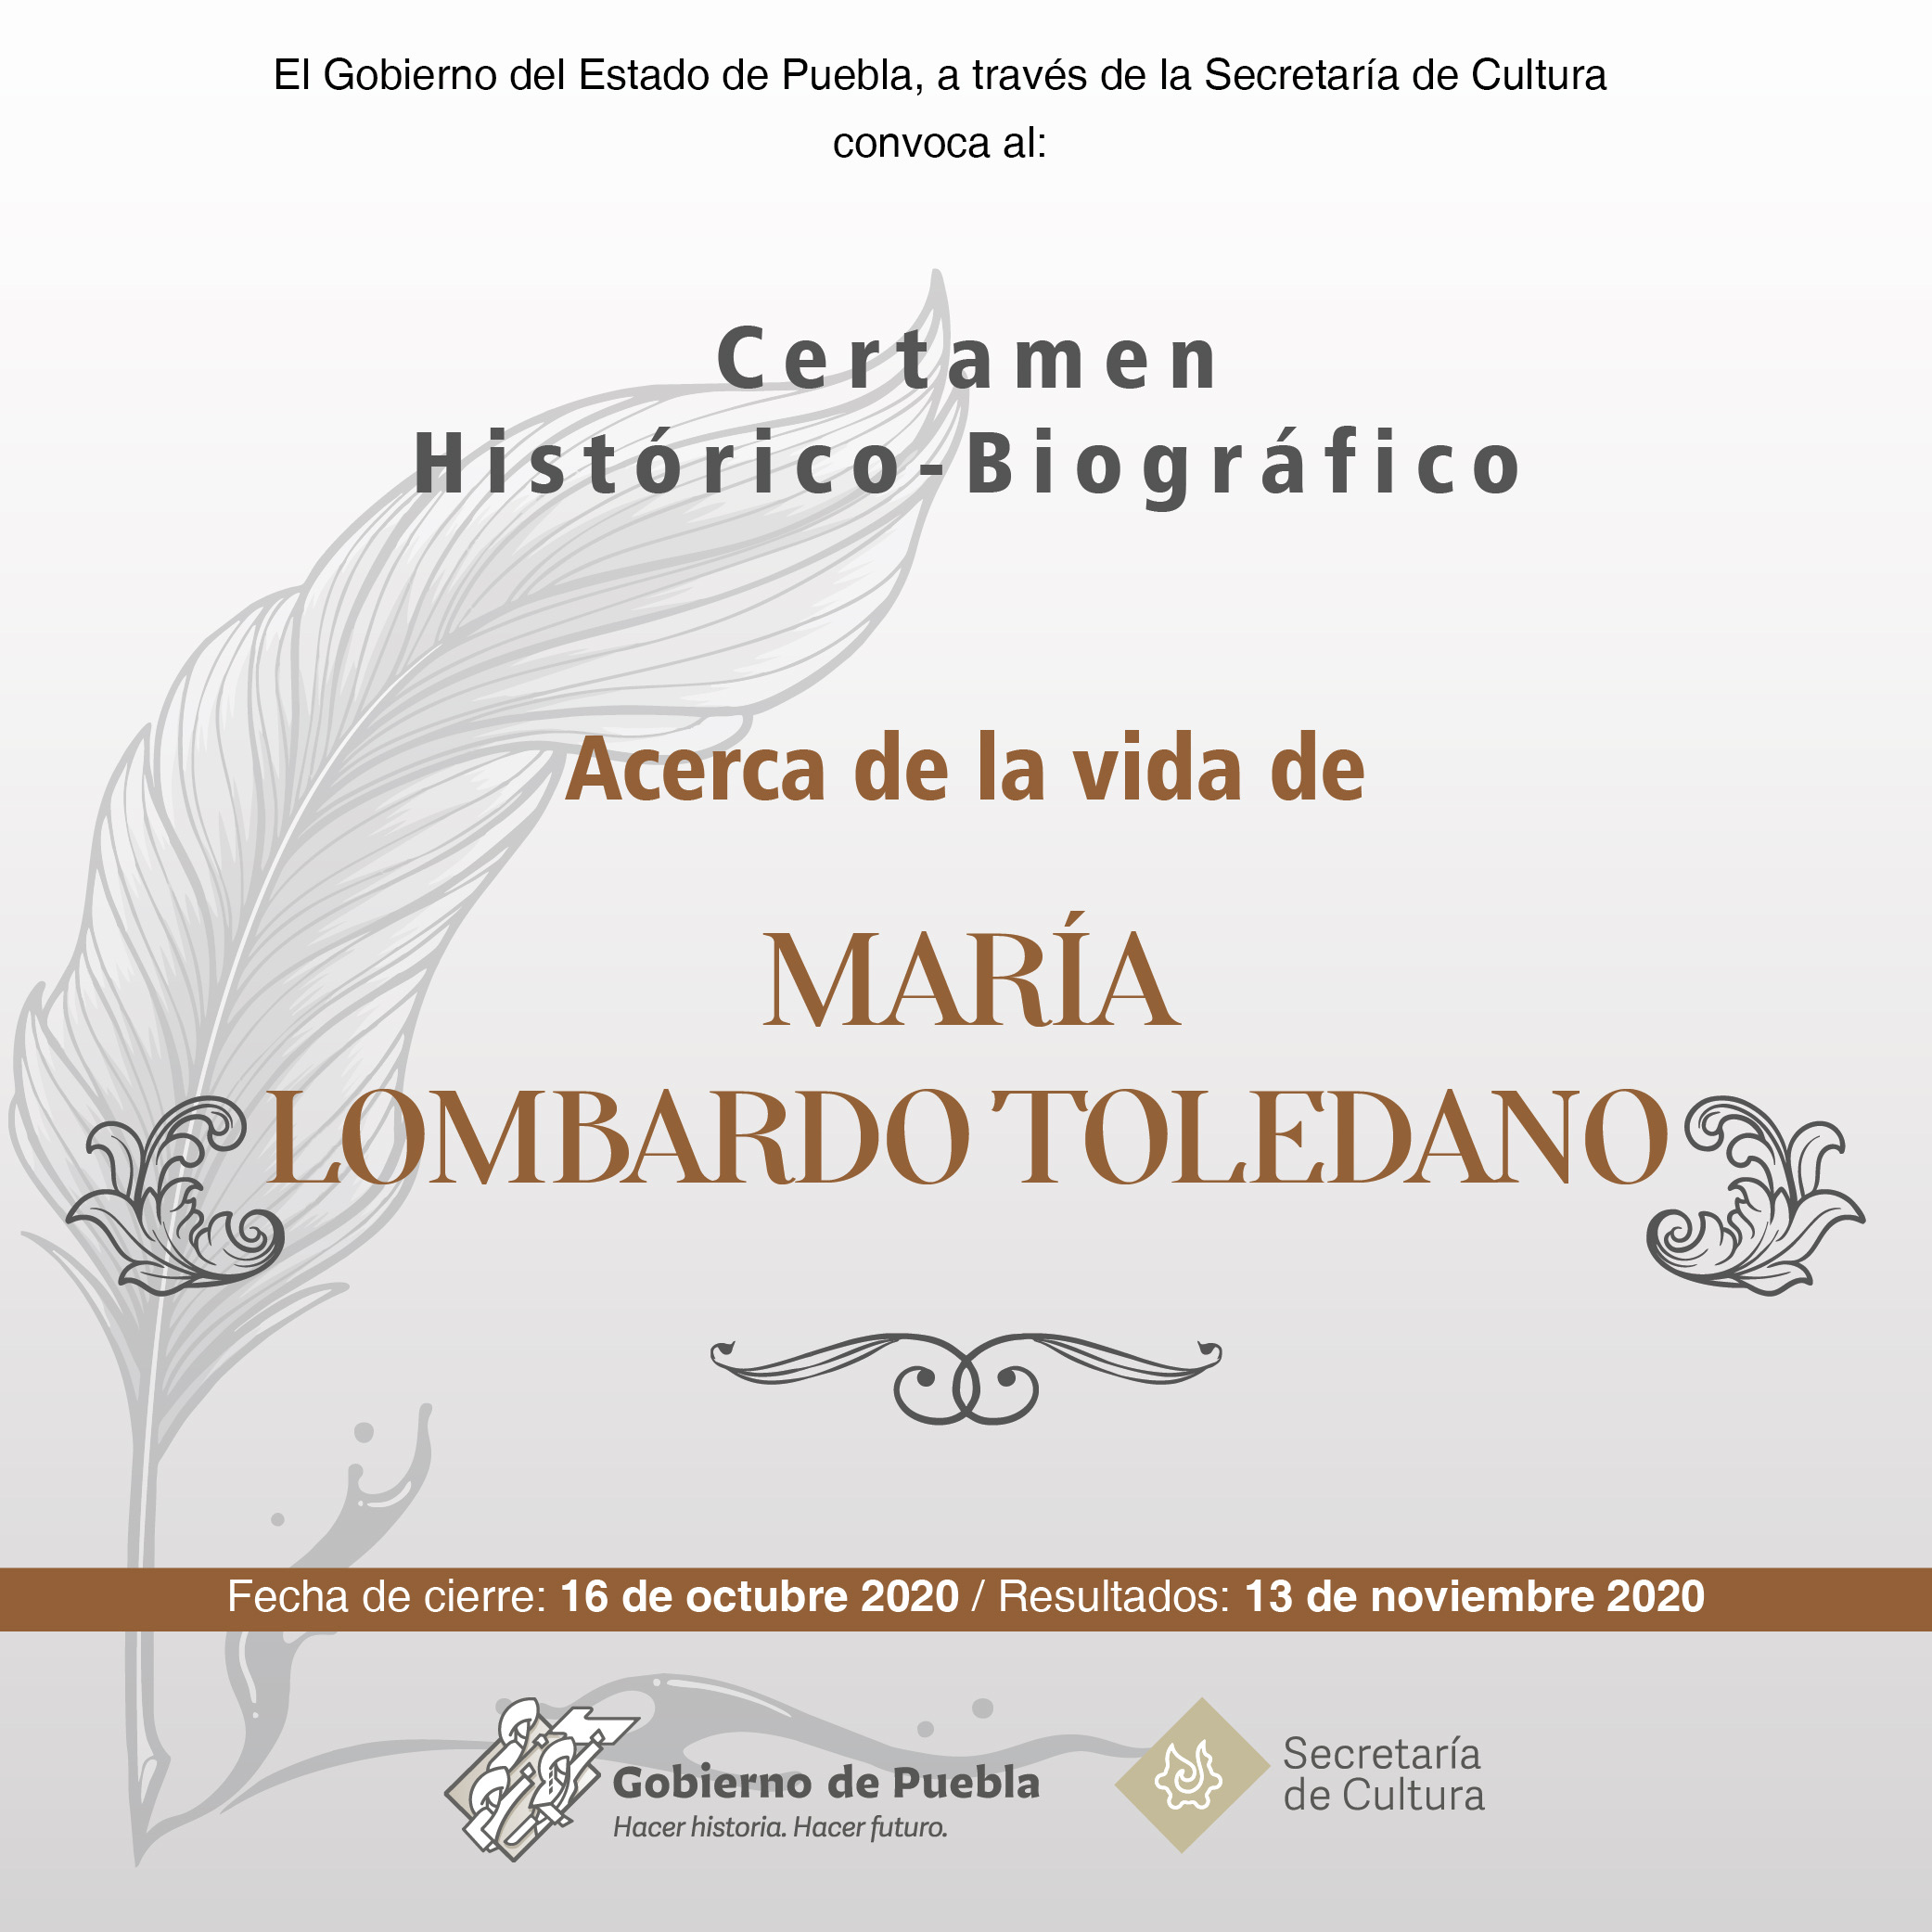 Lanza Secretaría de Cultura de Puebla certamen sobre hechos histórico-biográficos